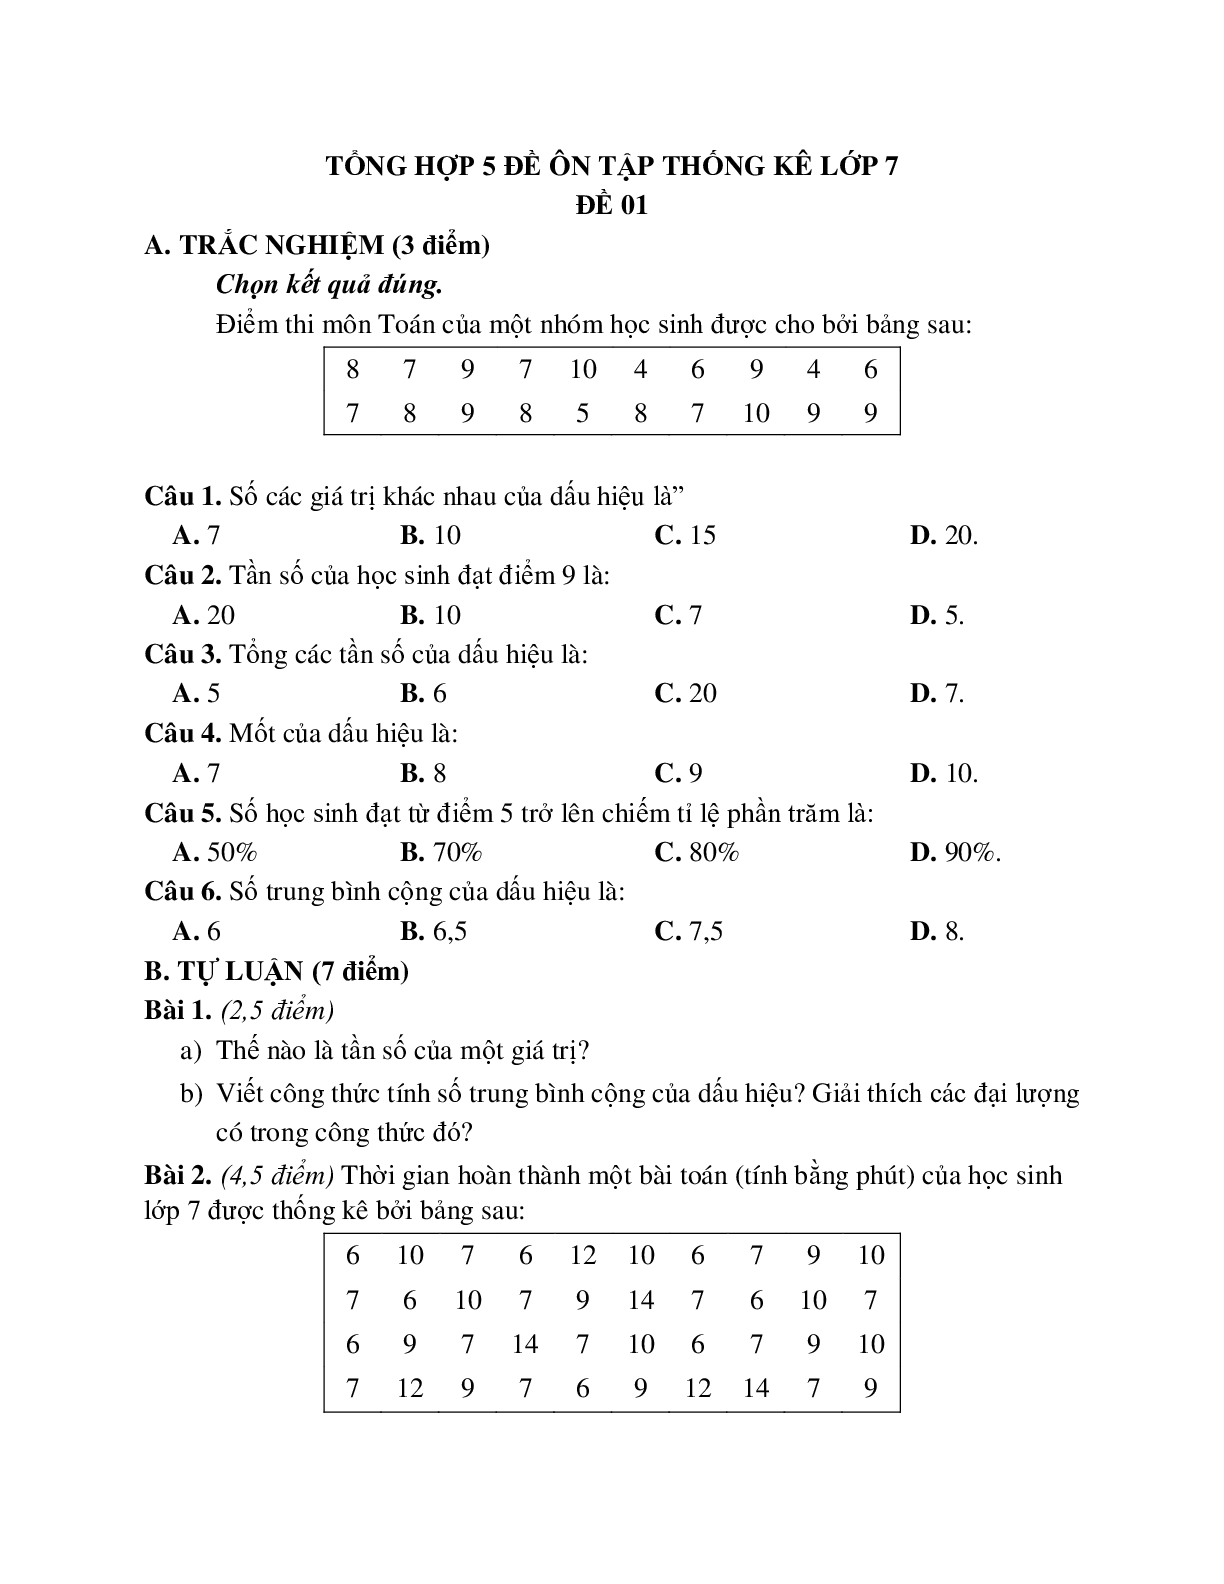 Tổng hợp 5 đề ôn tập thống kê lớp 7 (trang 1)